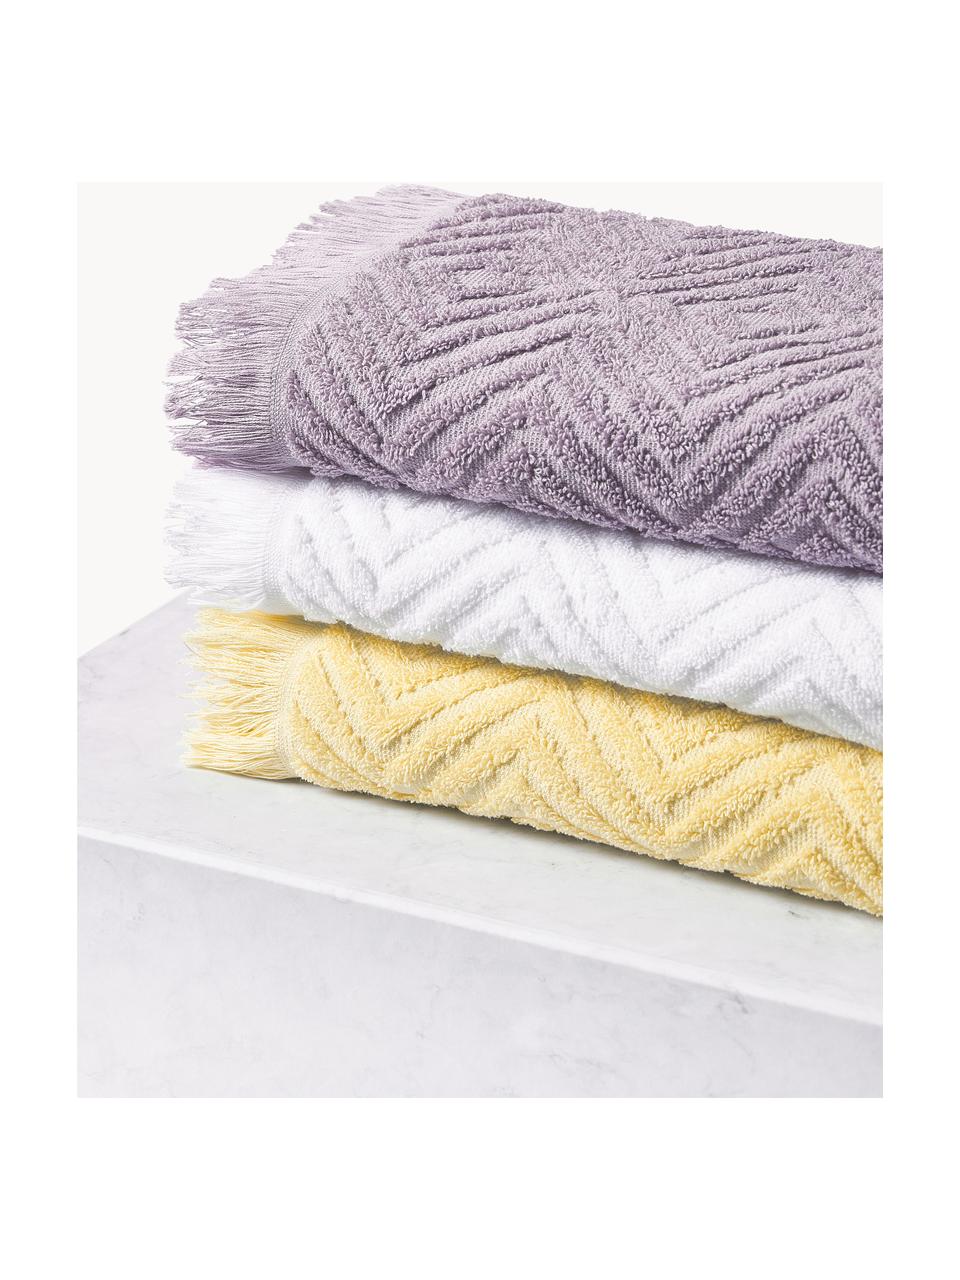 Set de toallas texturizadas Jacqui, tamaños diferentes, Lavanda, Set de 3 (toalla tocador, toalla lavabo y toalla ducha)